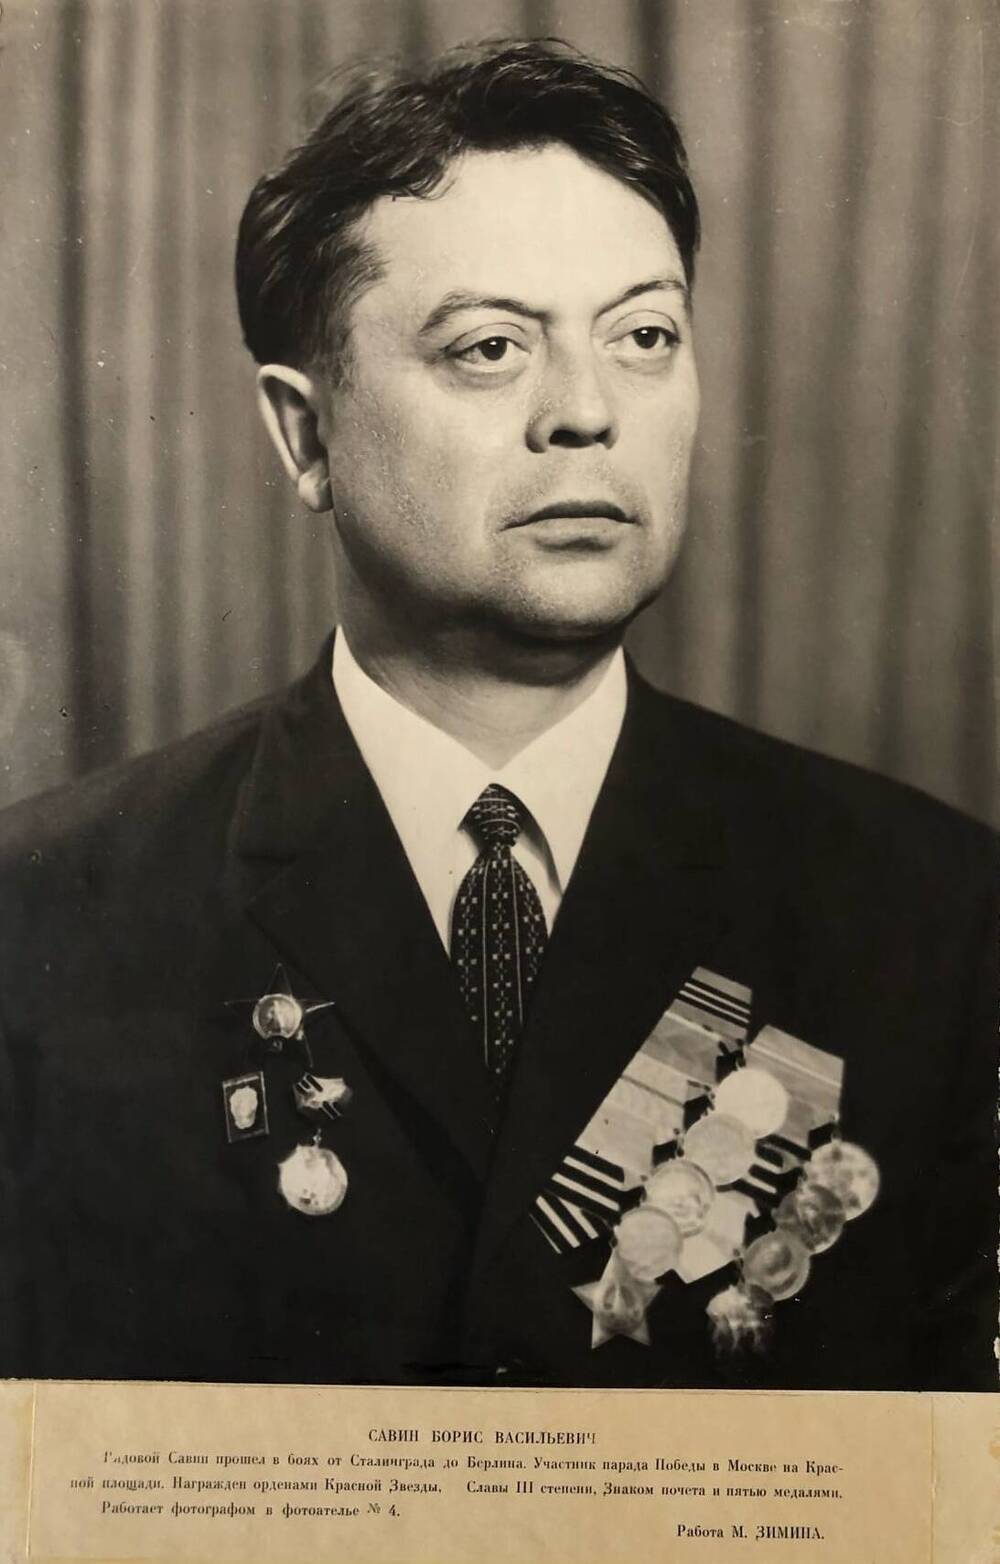 Фотография Савина Бориса Васильевича, участника Великой Отечественной войны 1941-1945 гг.